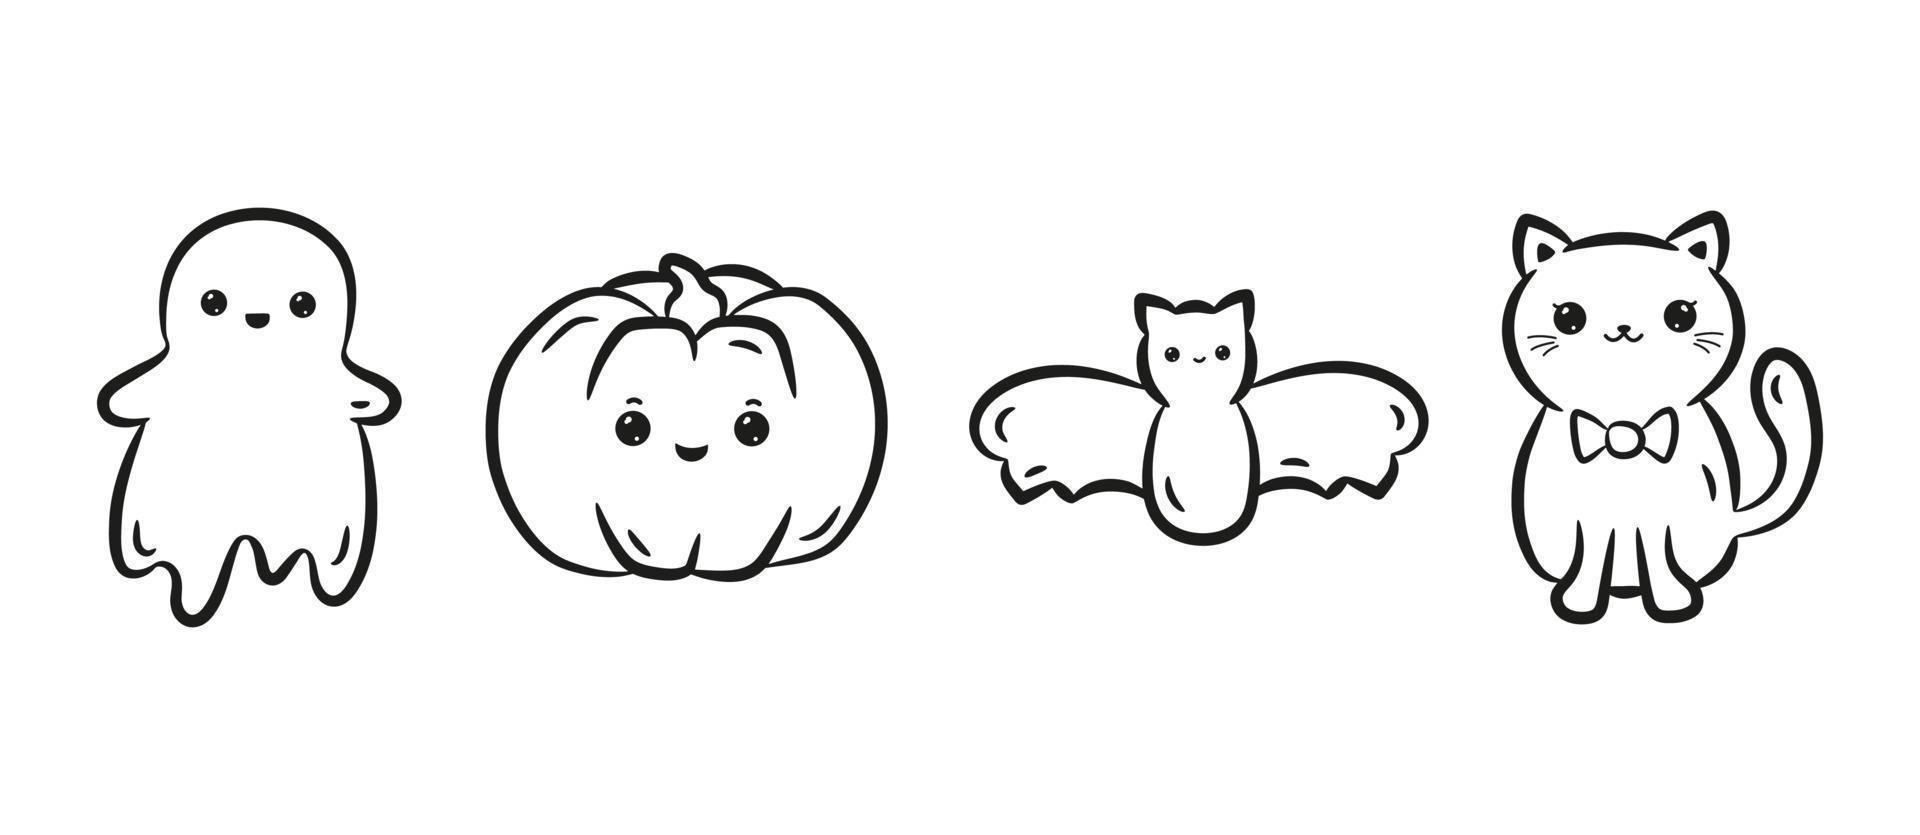 conjunto de personagens de halloween kawaii. coleção de abóbora kawaii fofa, gato, morcego e fantasma no estilo de desenho linear preto. ilustração vetorial vetor